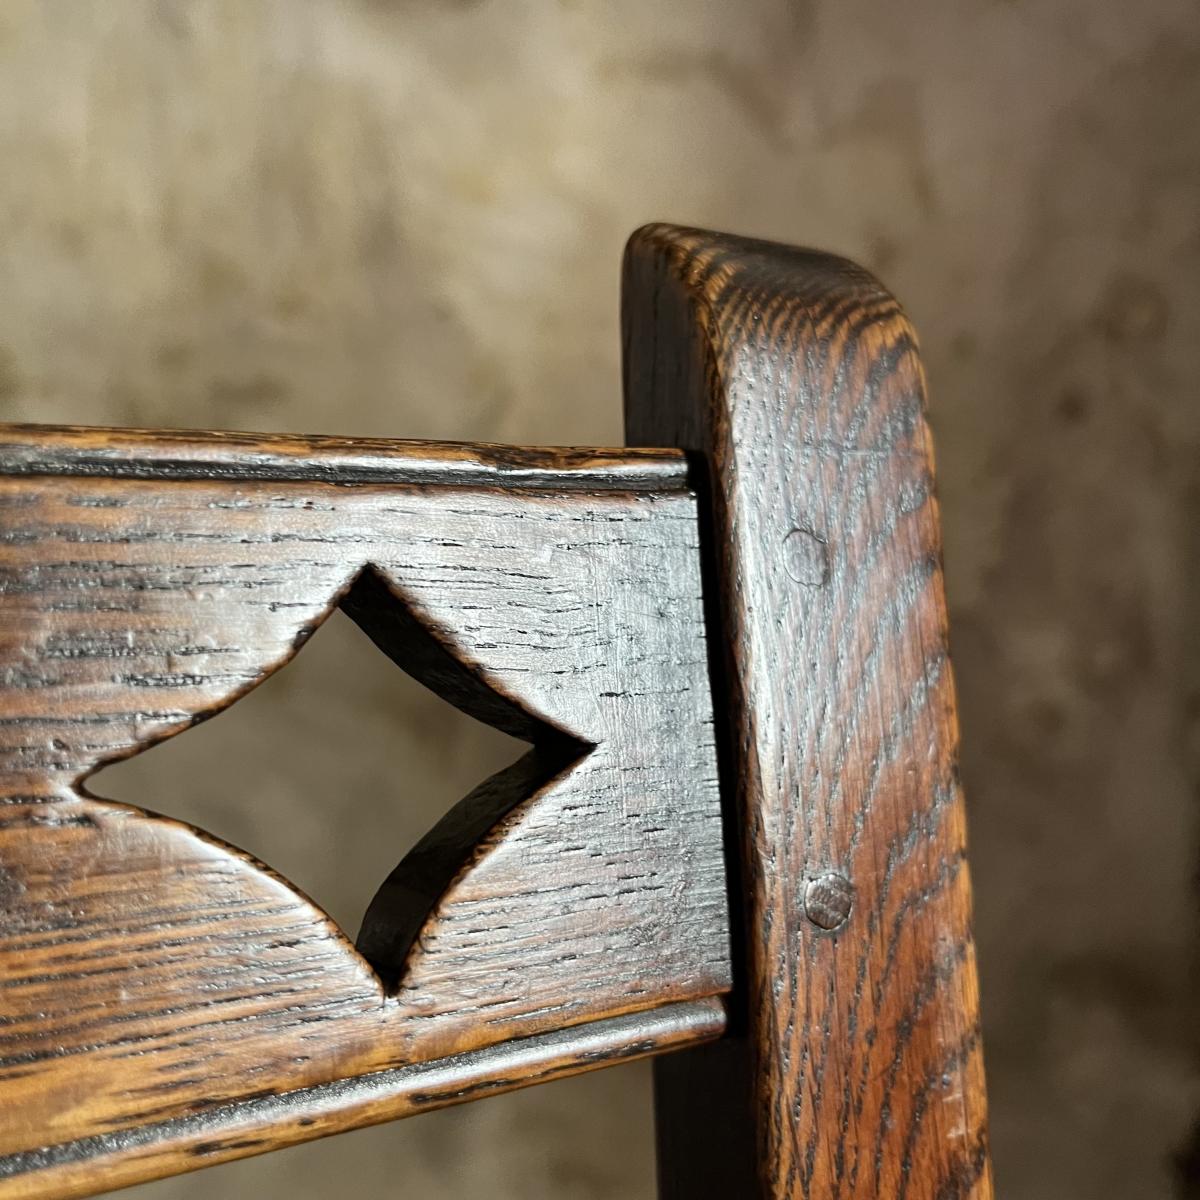 Welsh oak chair